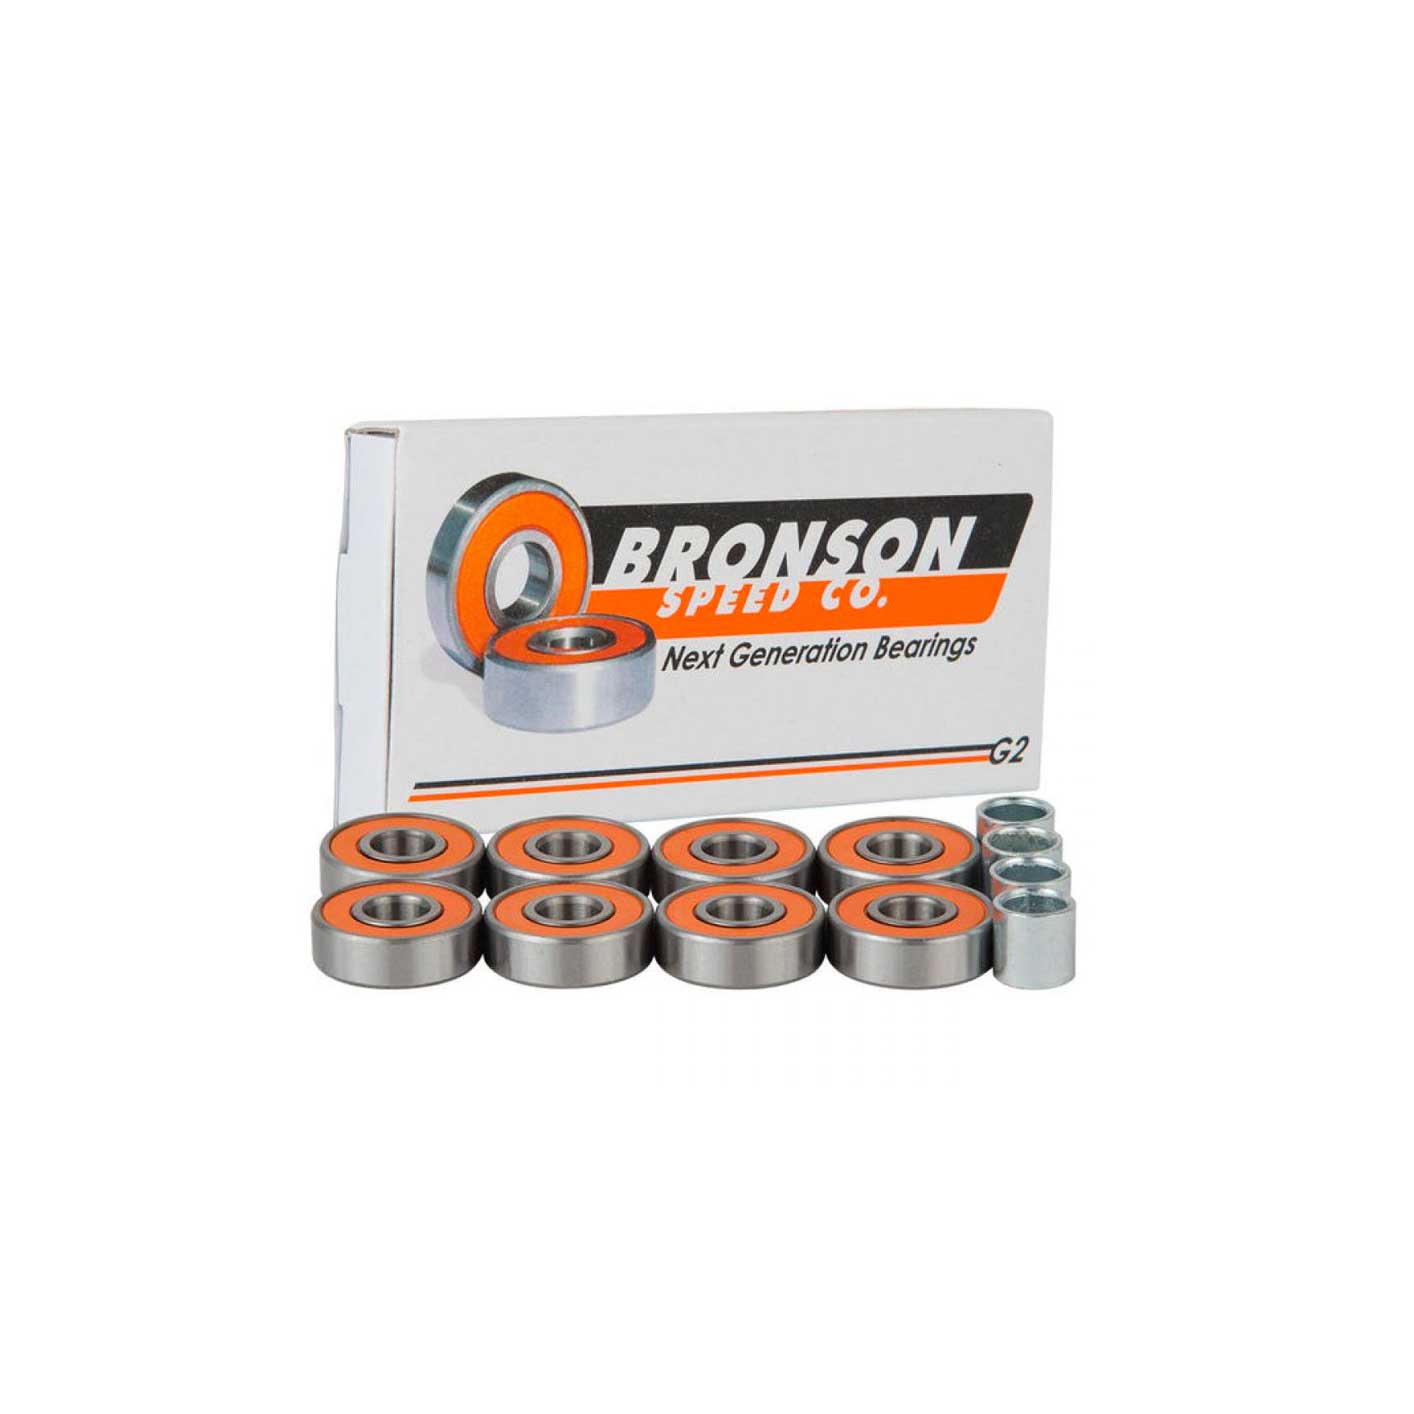 Bronson bearings